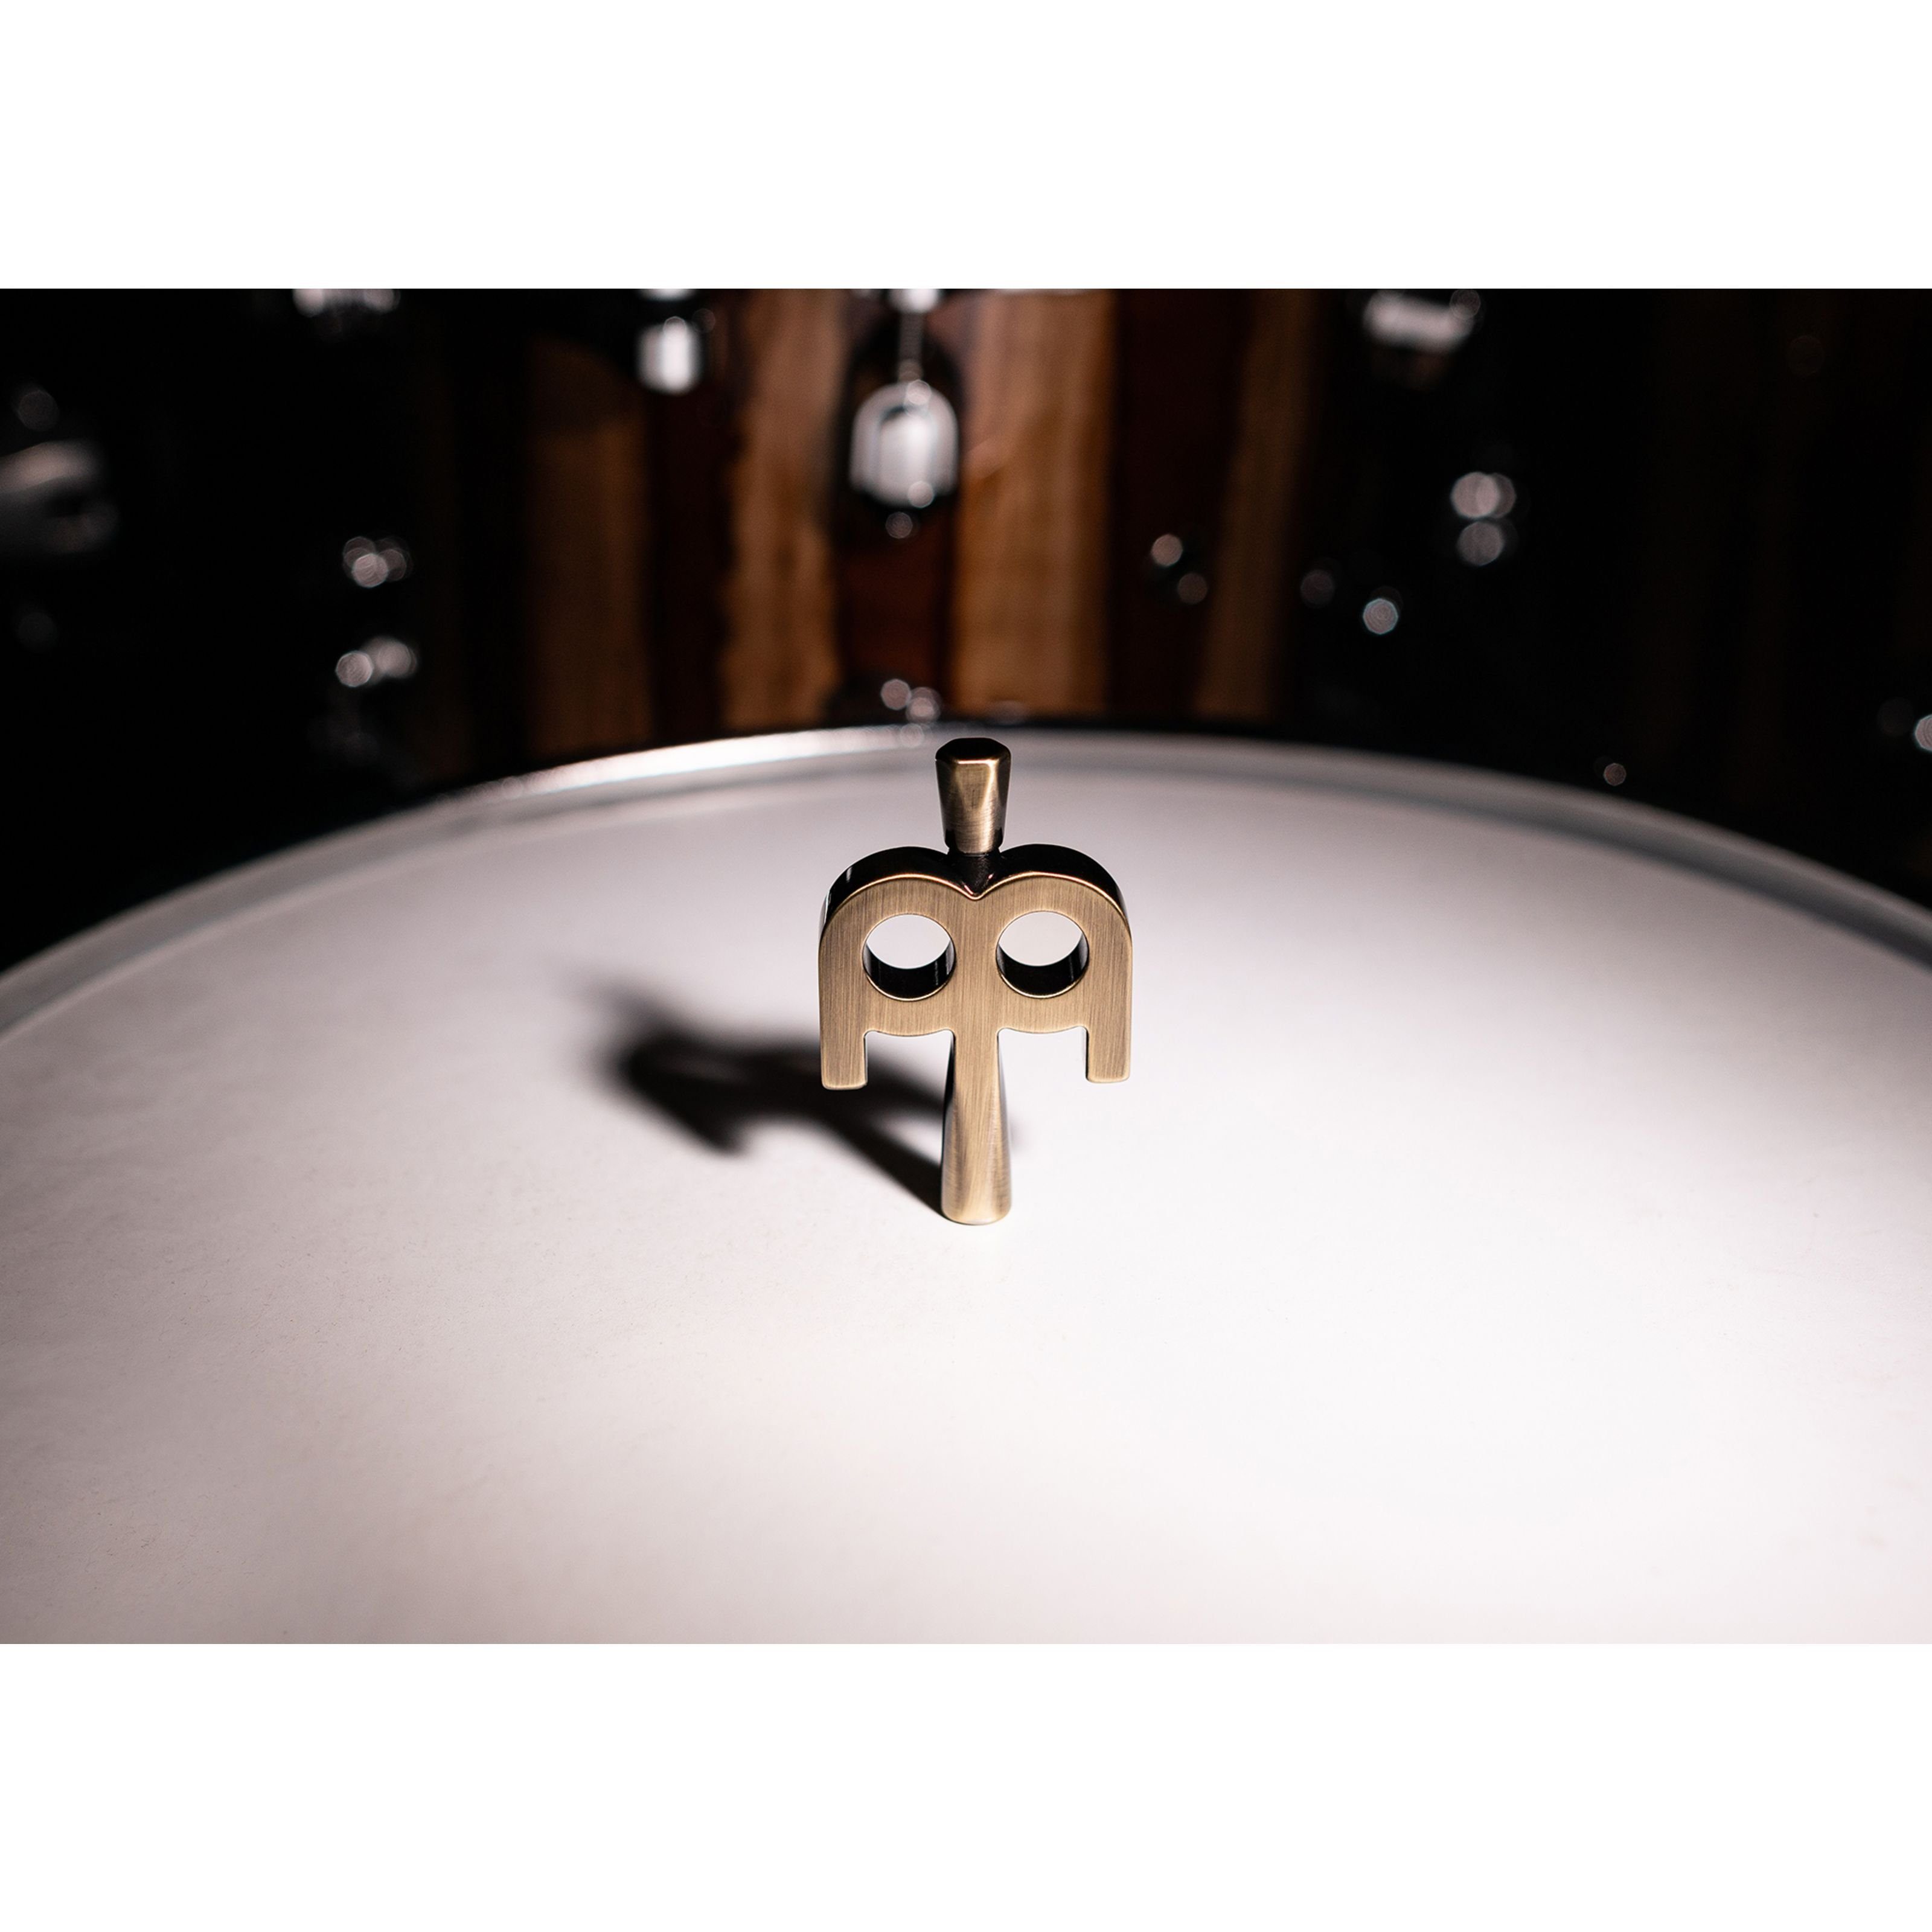 Meinl Percussion Spielzeug-Musikinstrument, für Kinetic Stimmschlüssel Key Antique Bronze SB510 Schlagzeuge 